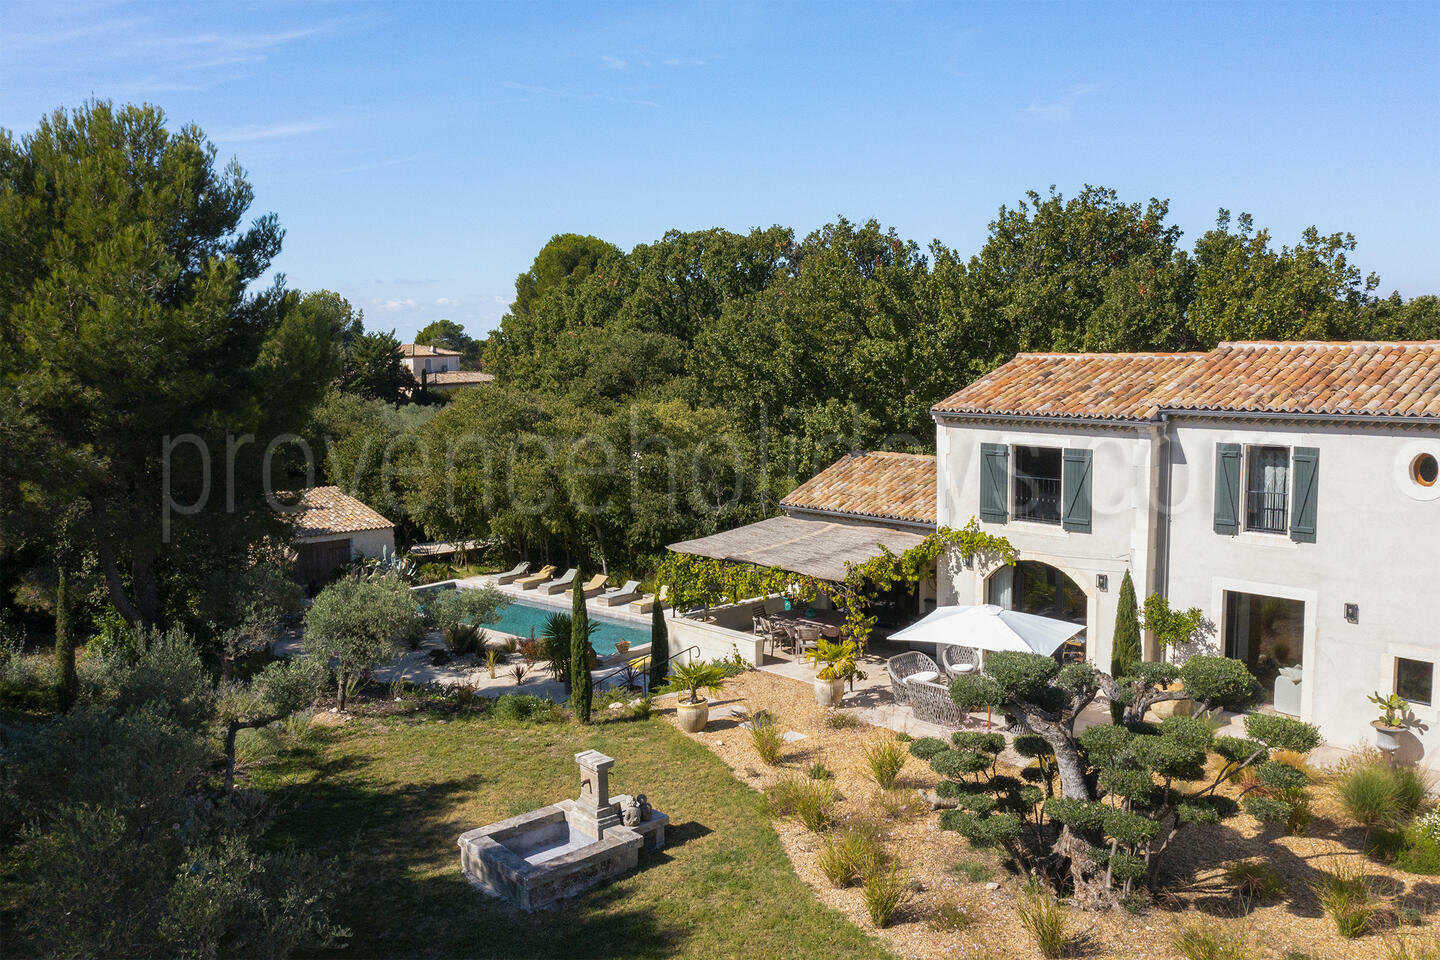 Location de vacances élégante avec piscine chauffée près de Saint-Rémy-de-Provence 1 - La Villa Gauloise: Villa: Exterior